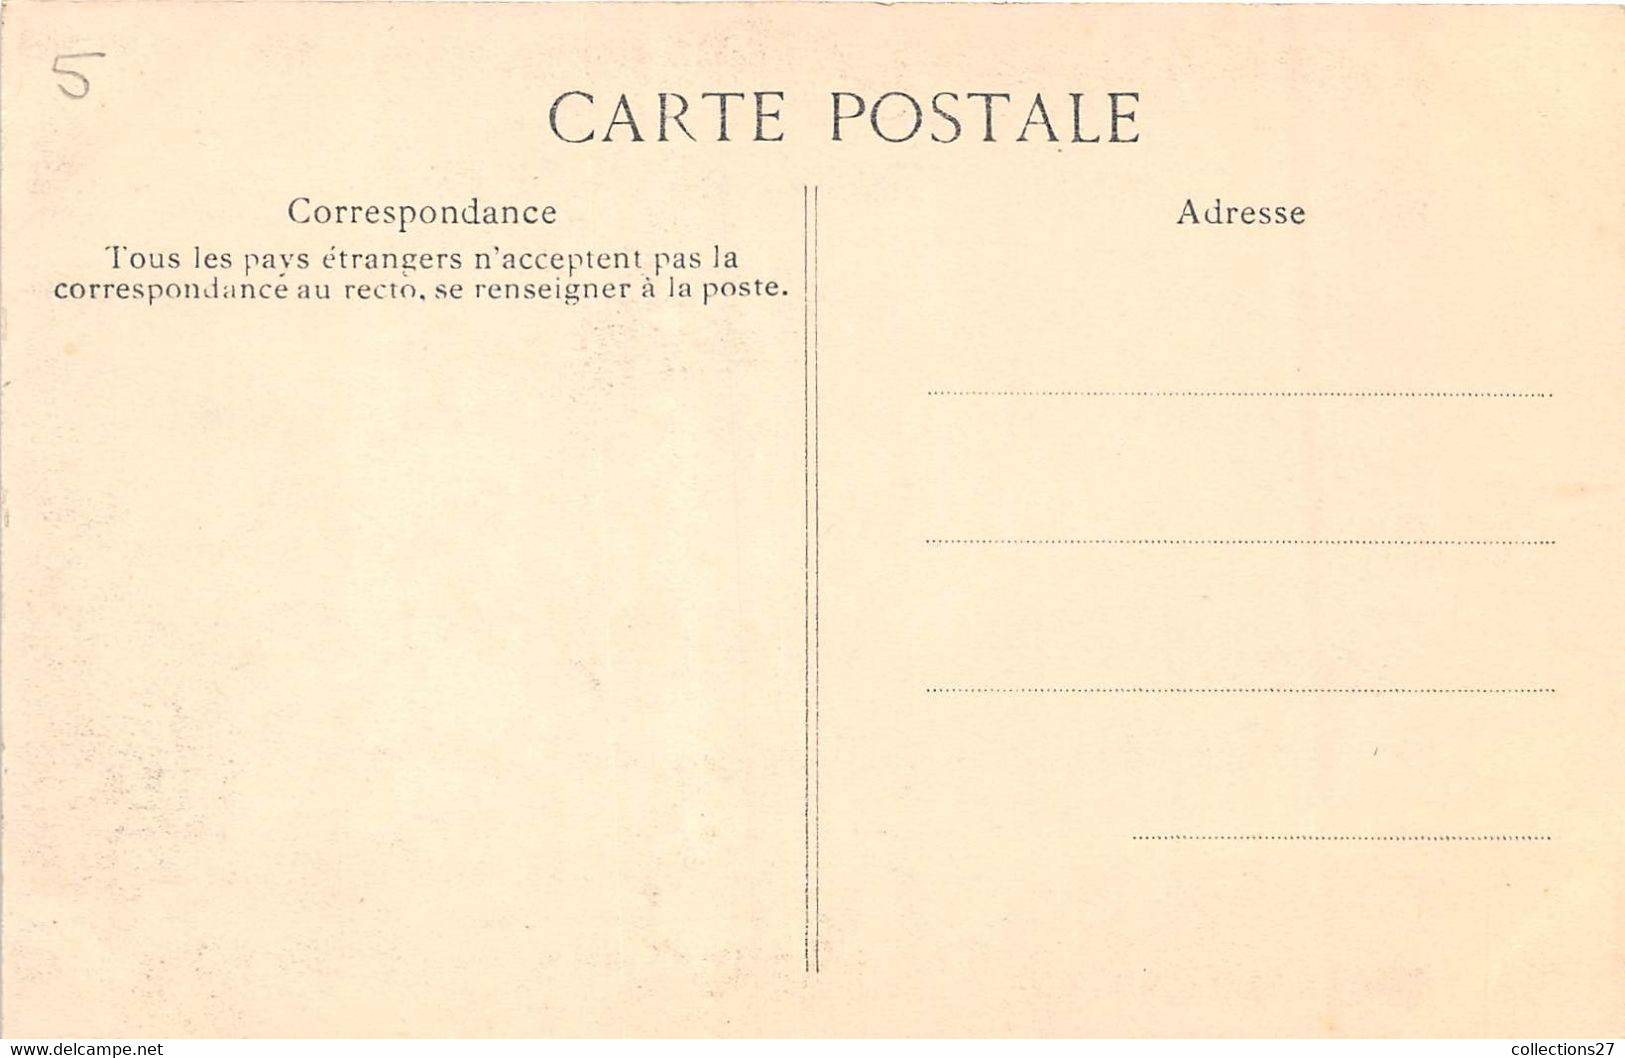 PARIS- LOT DE 9 CARTES POSTALES- MI-CAREME 1908